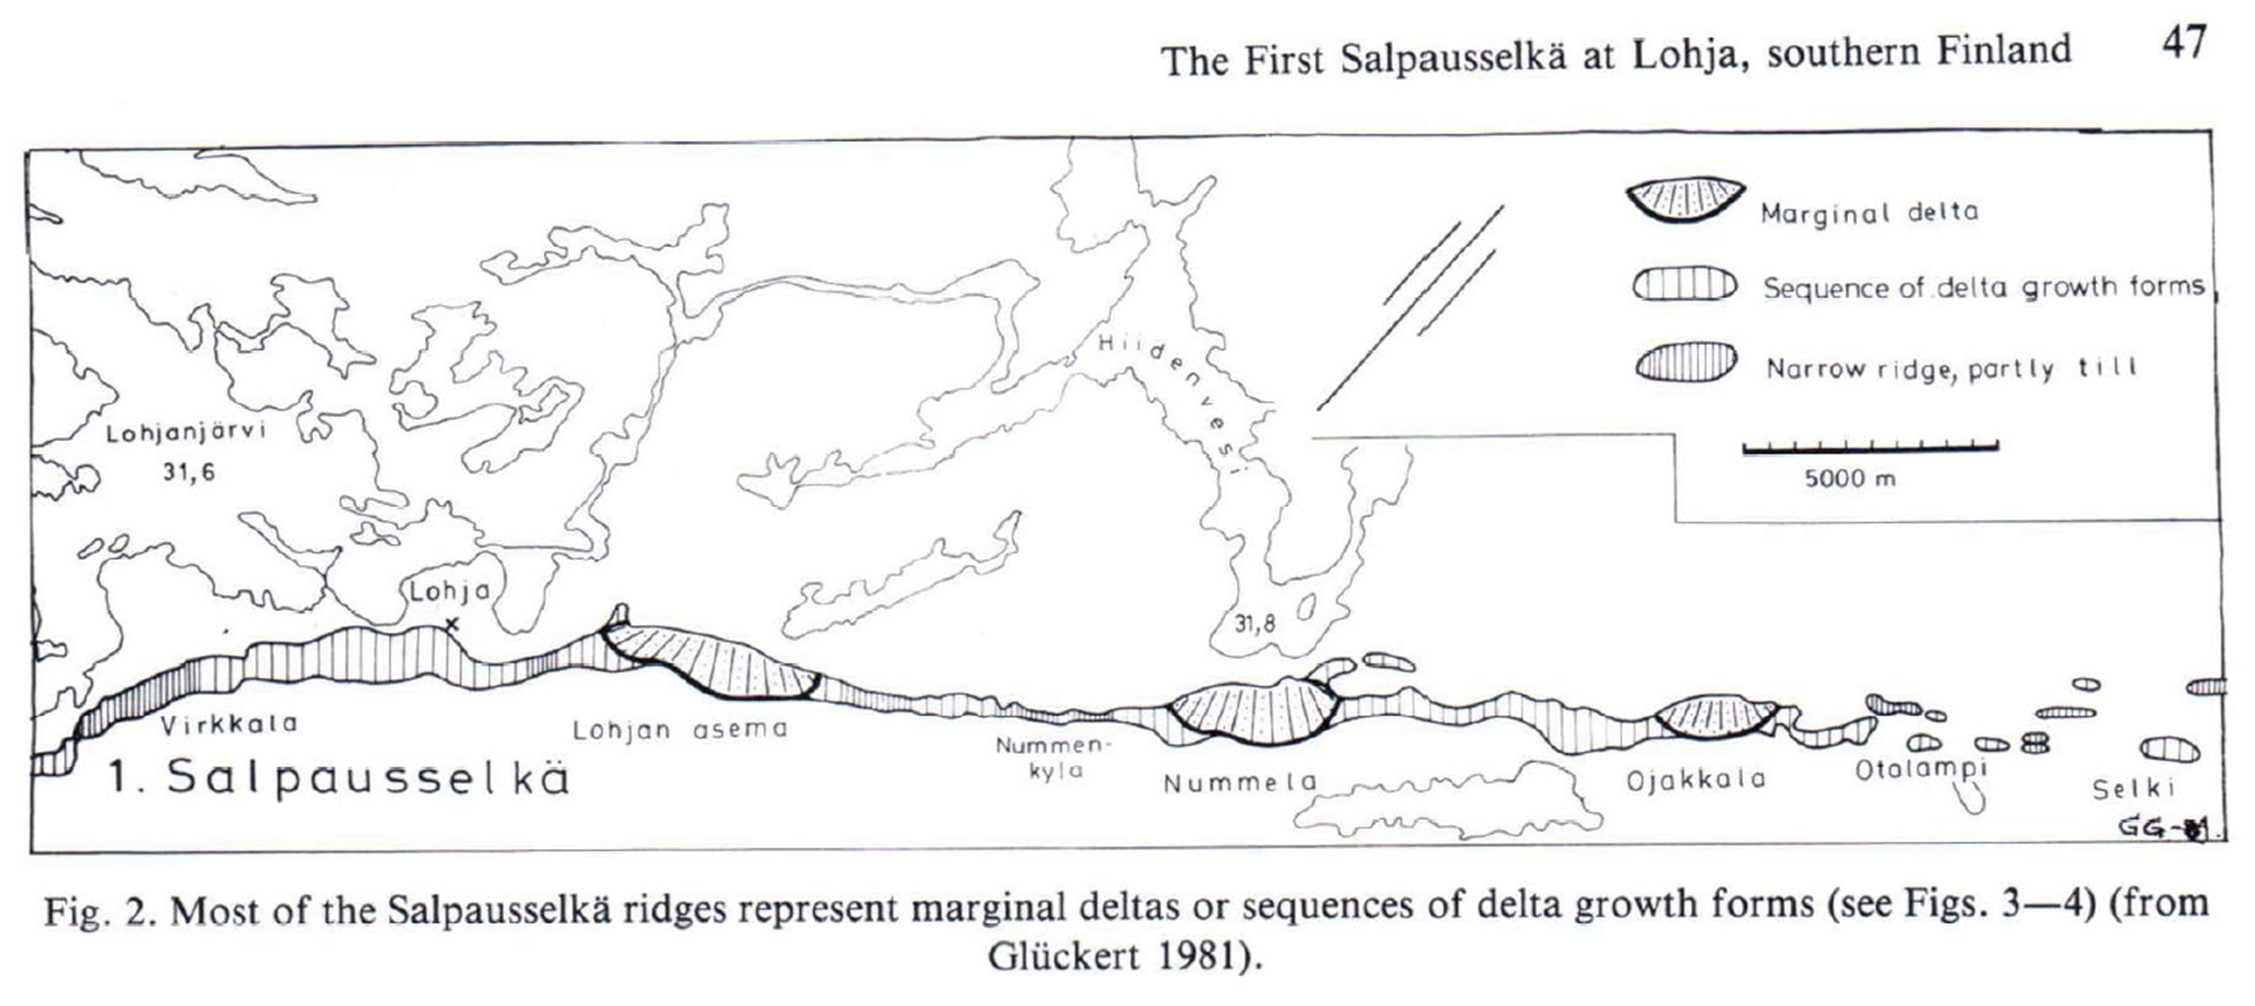 Piirretty kartta Ensimmäisestä Salpausselästä Lohjalla